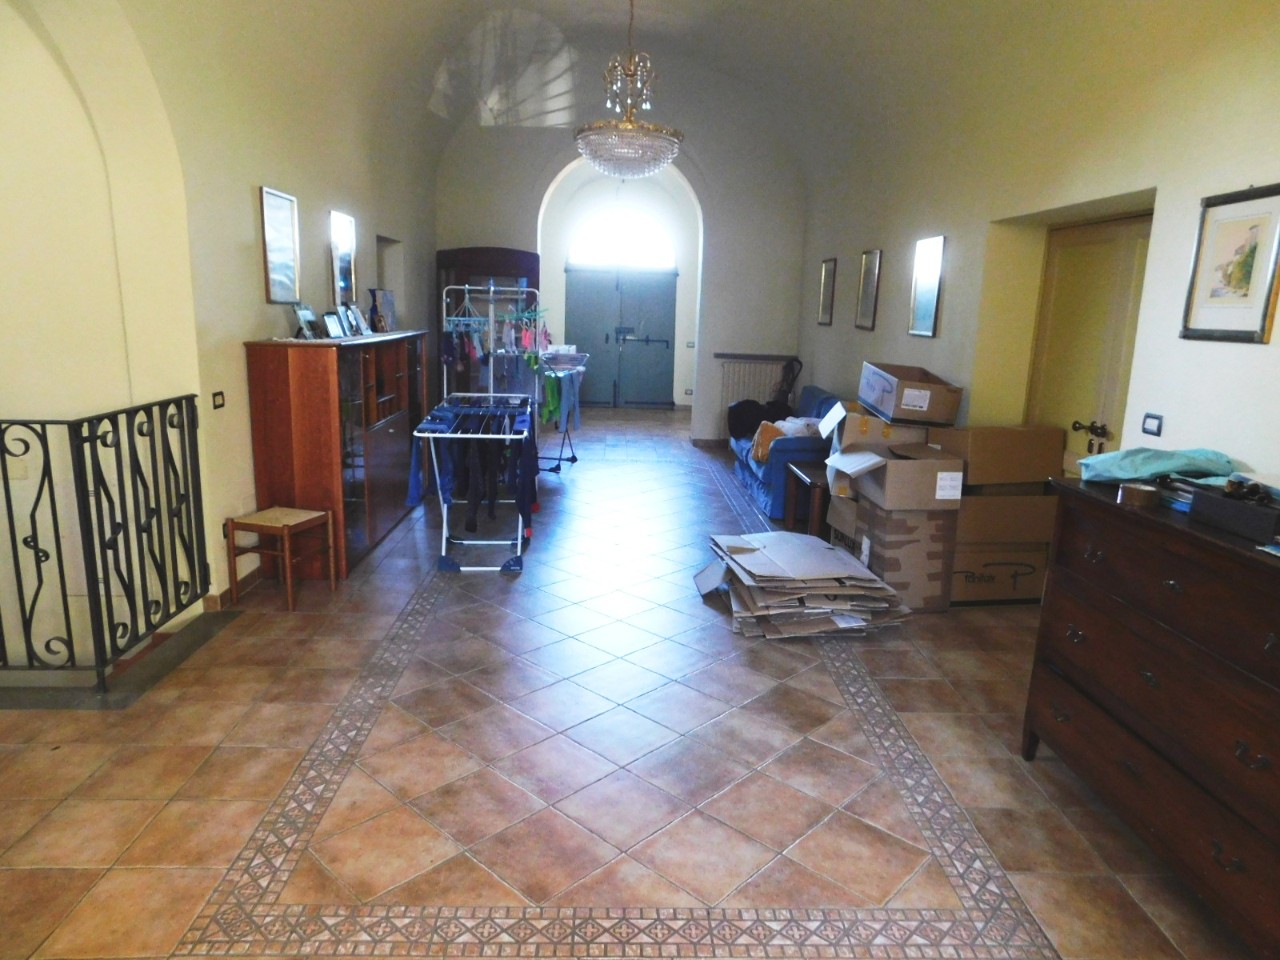 Villa Indipendente in vendita Cavriago